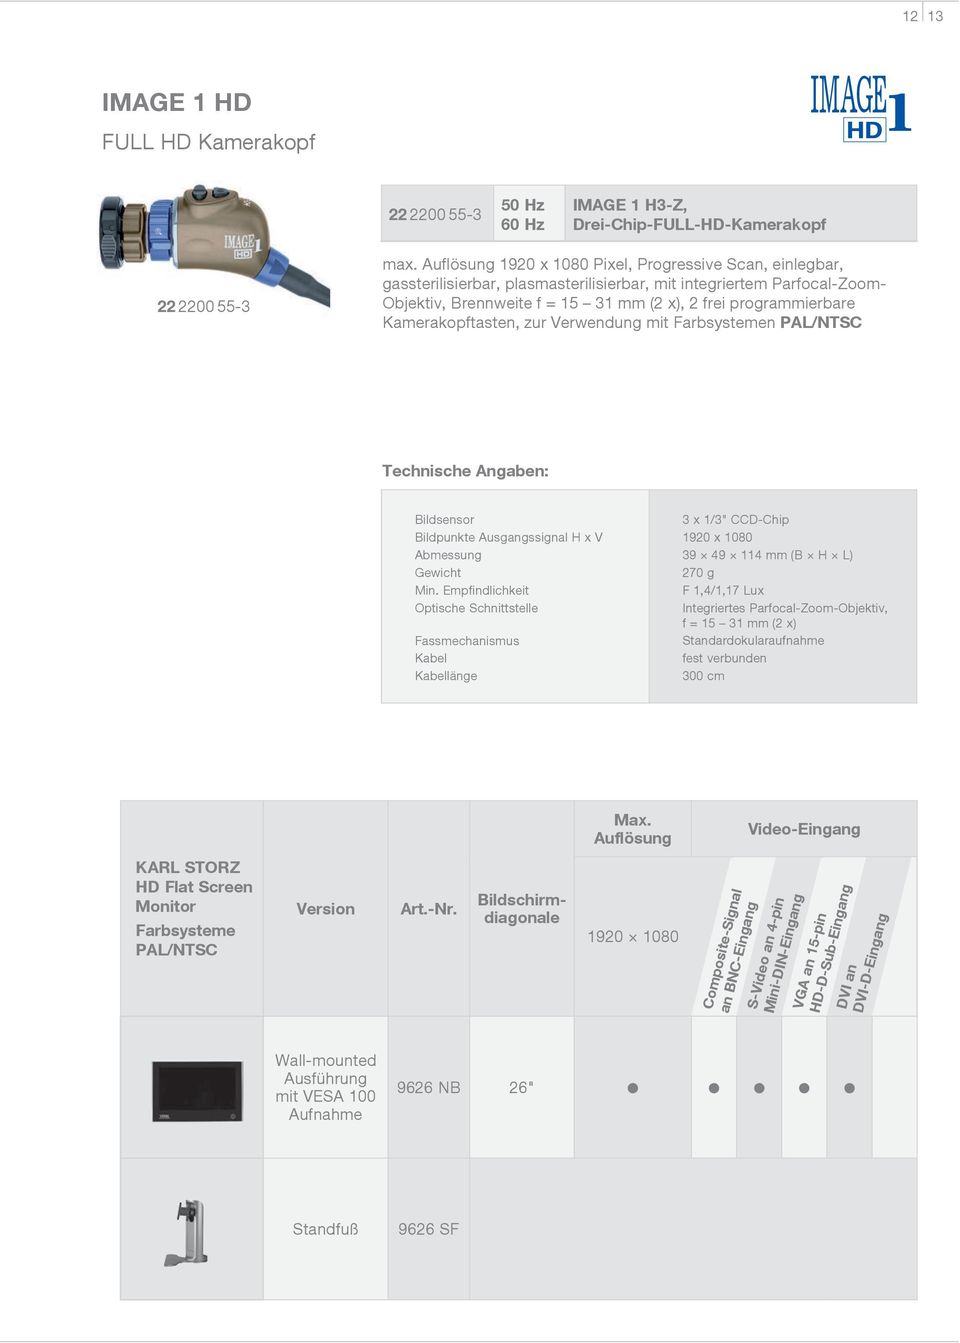 Kamerakopftasten, zur Verwendung mit Farbsystemen PAL/NTSC Technische Angaben: Bildsensor Bildpunkte Ausgangssignal H x V Abmessung Gewicht Min.